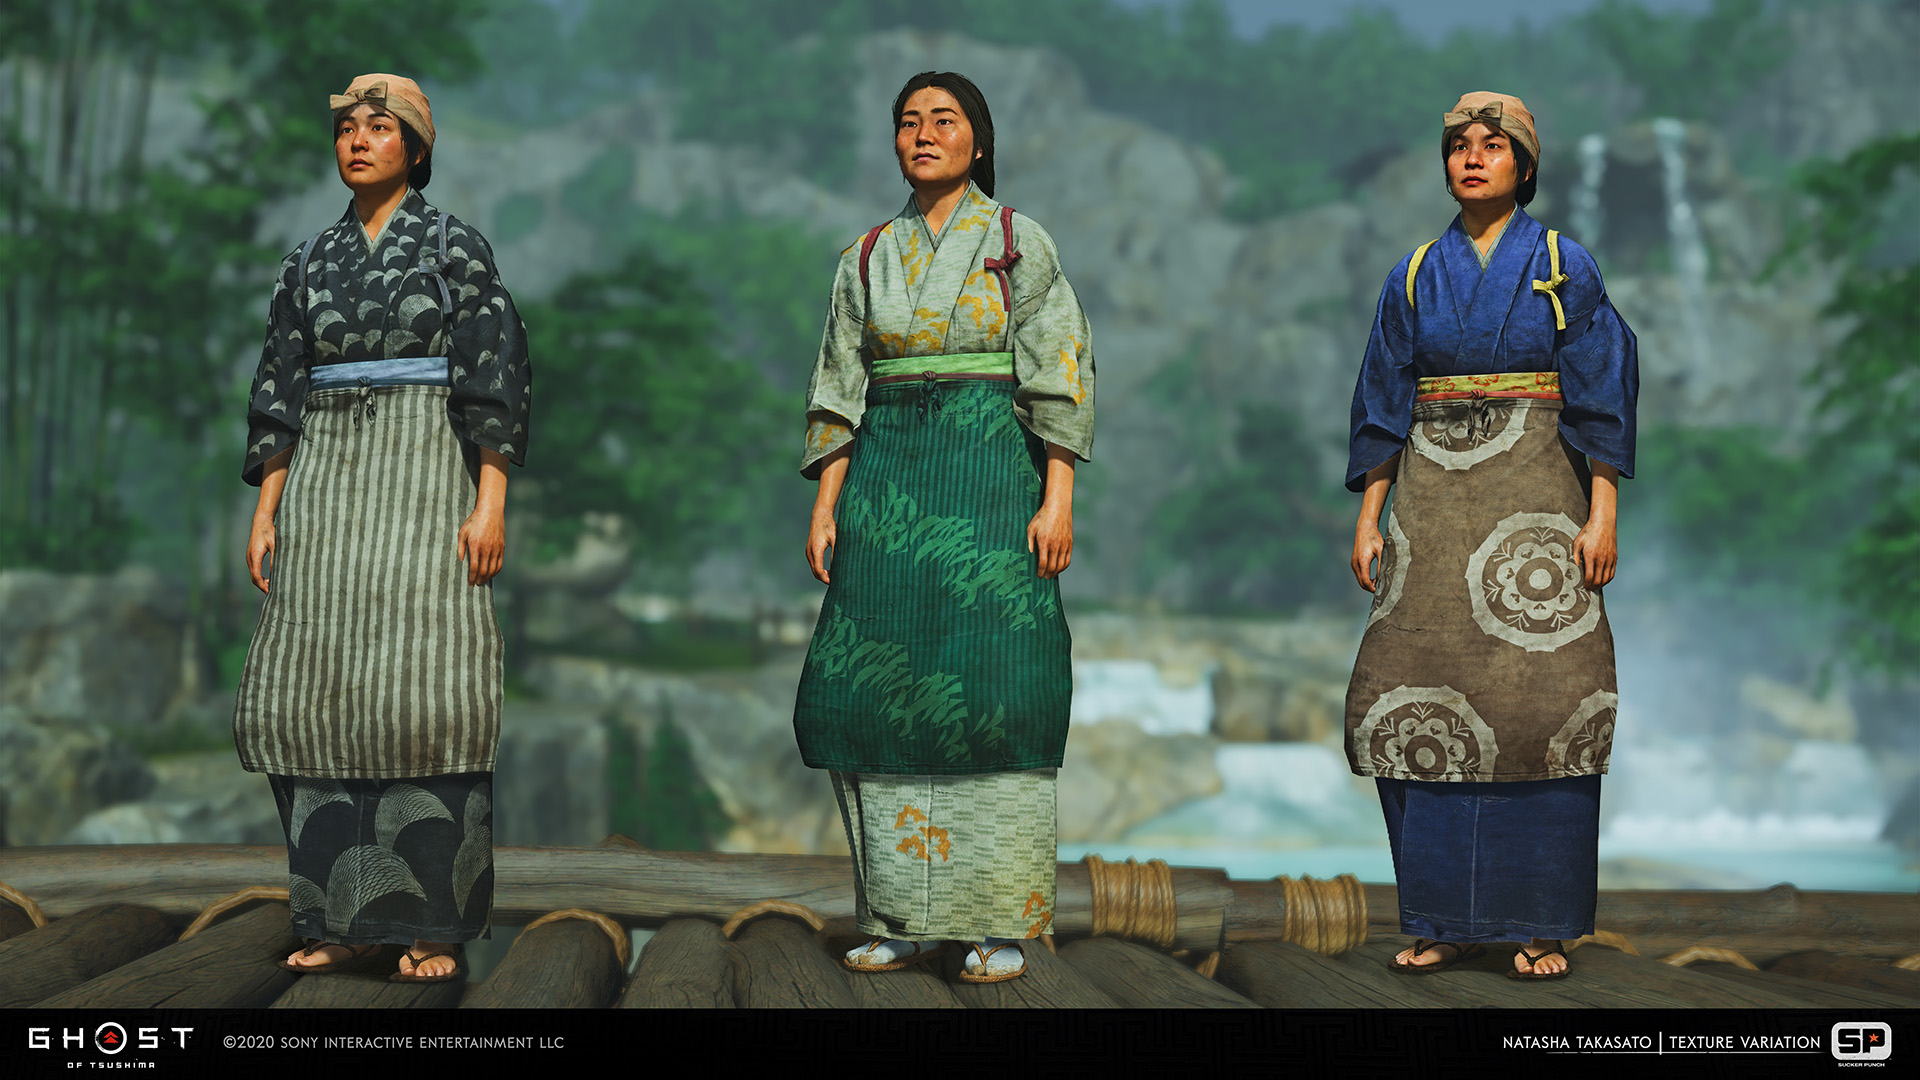 《对马岛之鬼》百余张概念原画赏析 再现古代日本风貌